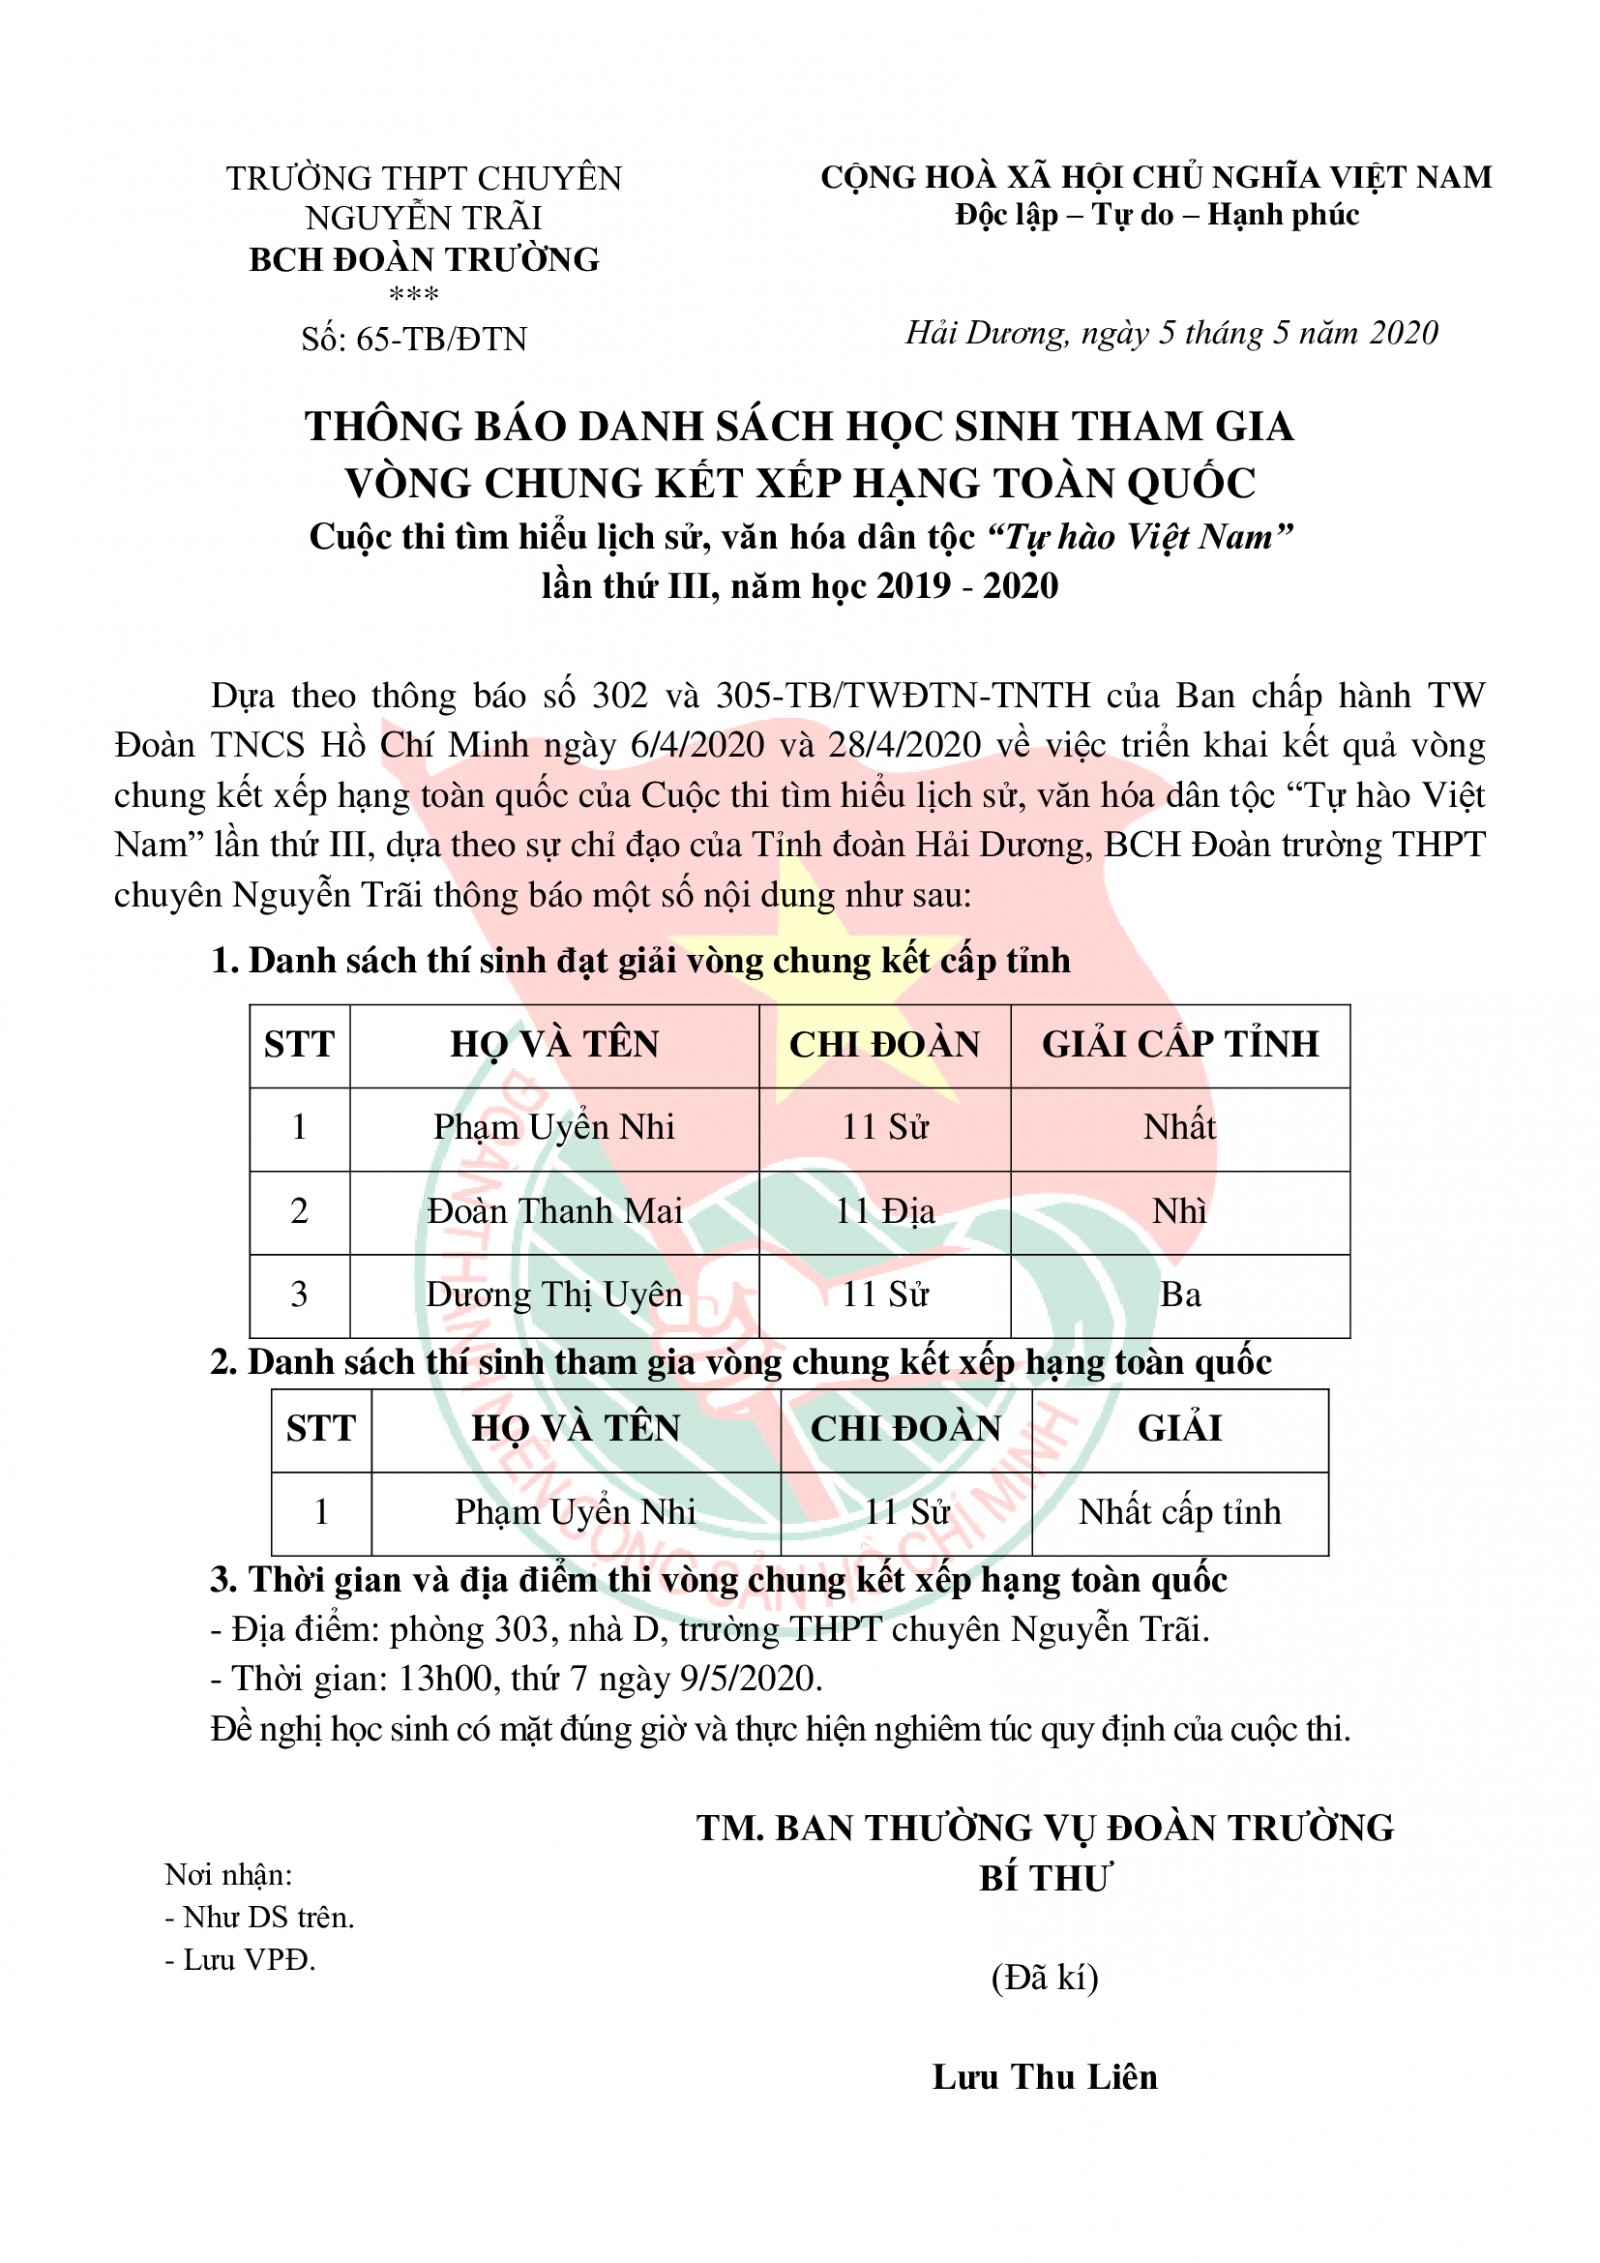 Thông báo chính thức từ BCH Đoàn trường THPT chuyên Nguyễn Trãi về kết quả cuộc thi